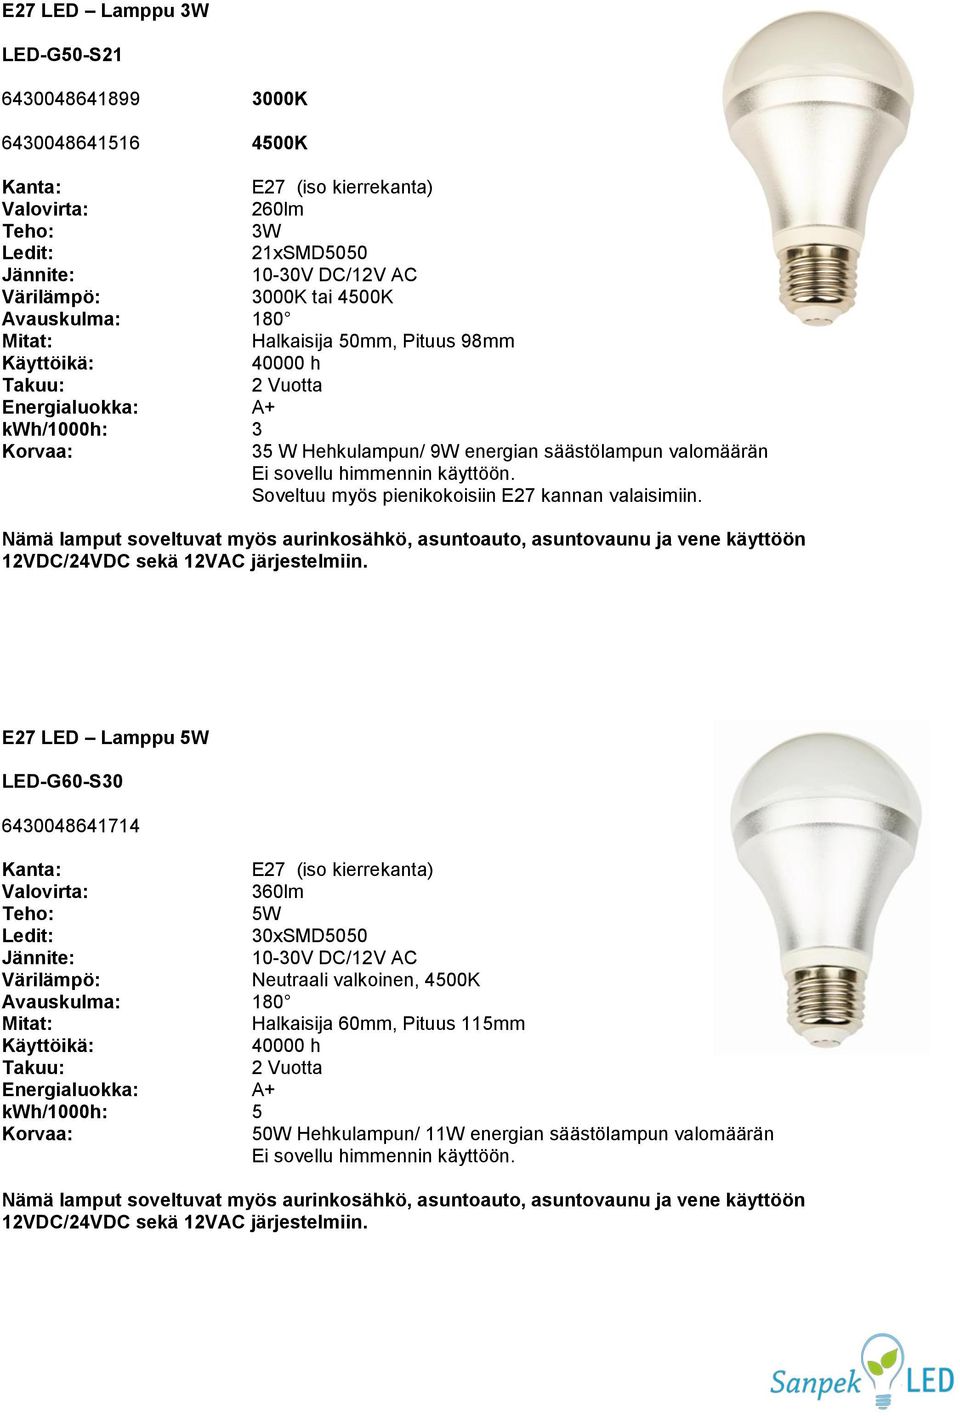 Nämä lamput soveltuvat myös aurinkosähkö, asuntoauto, asuntovaunu ja vene käyttöön 12VDC/24VDC sekä 12VAC järjestelmiin.